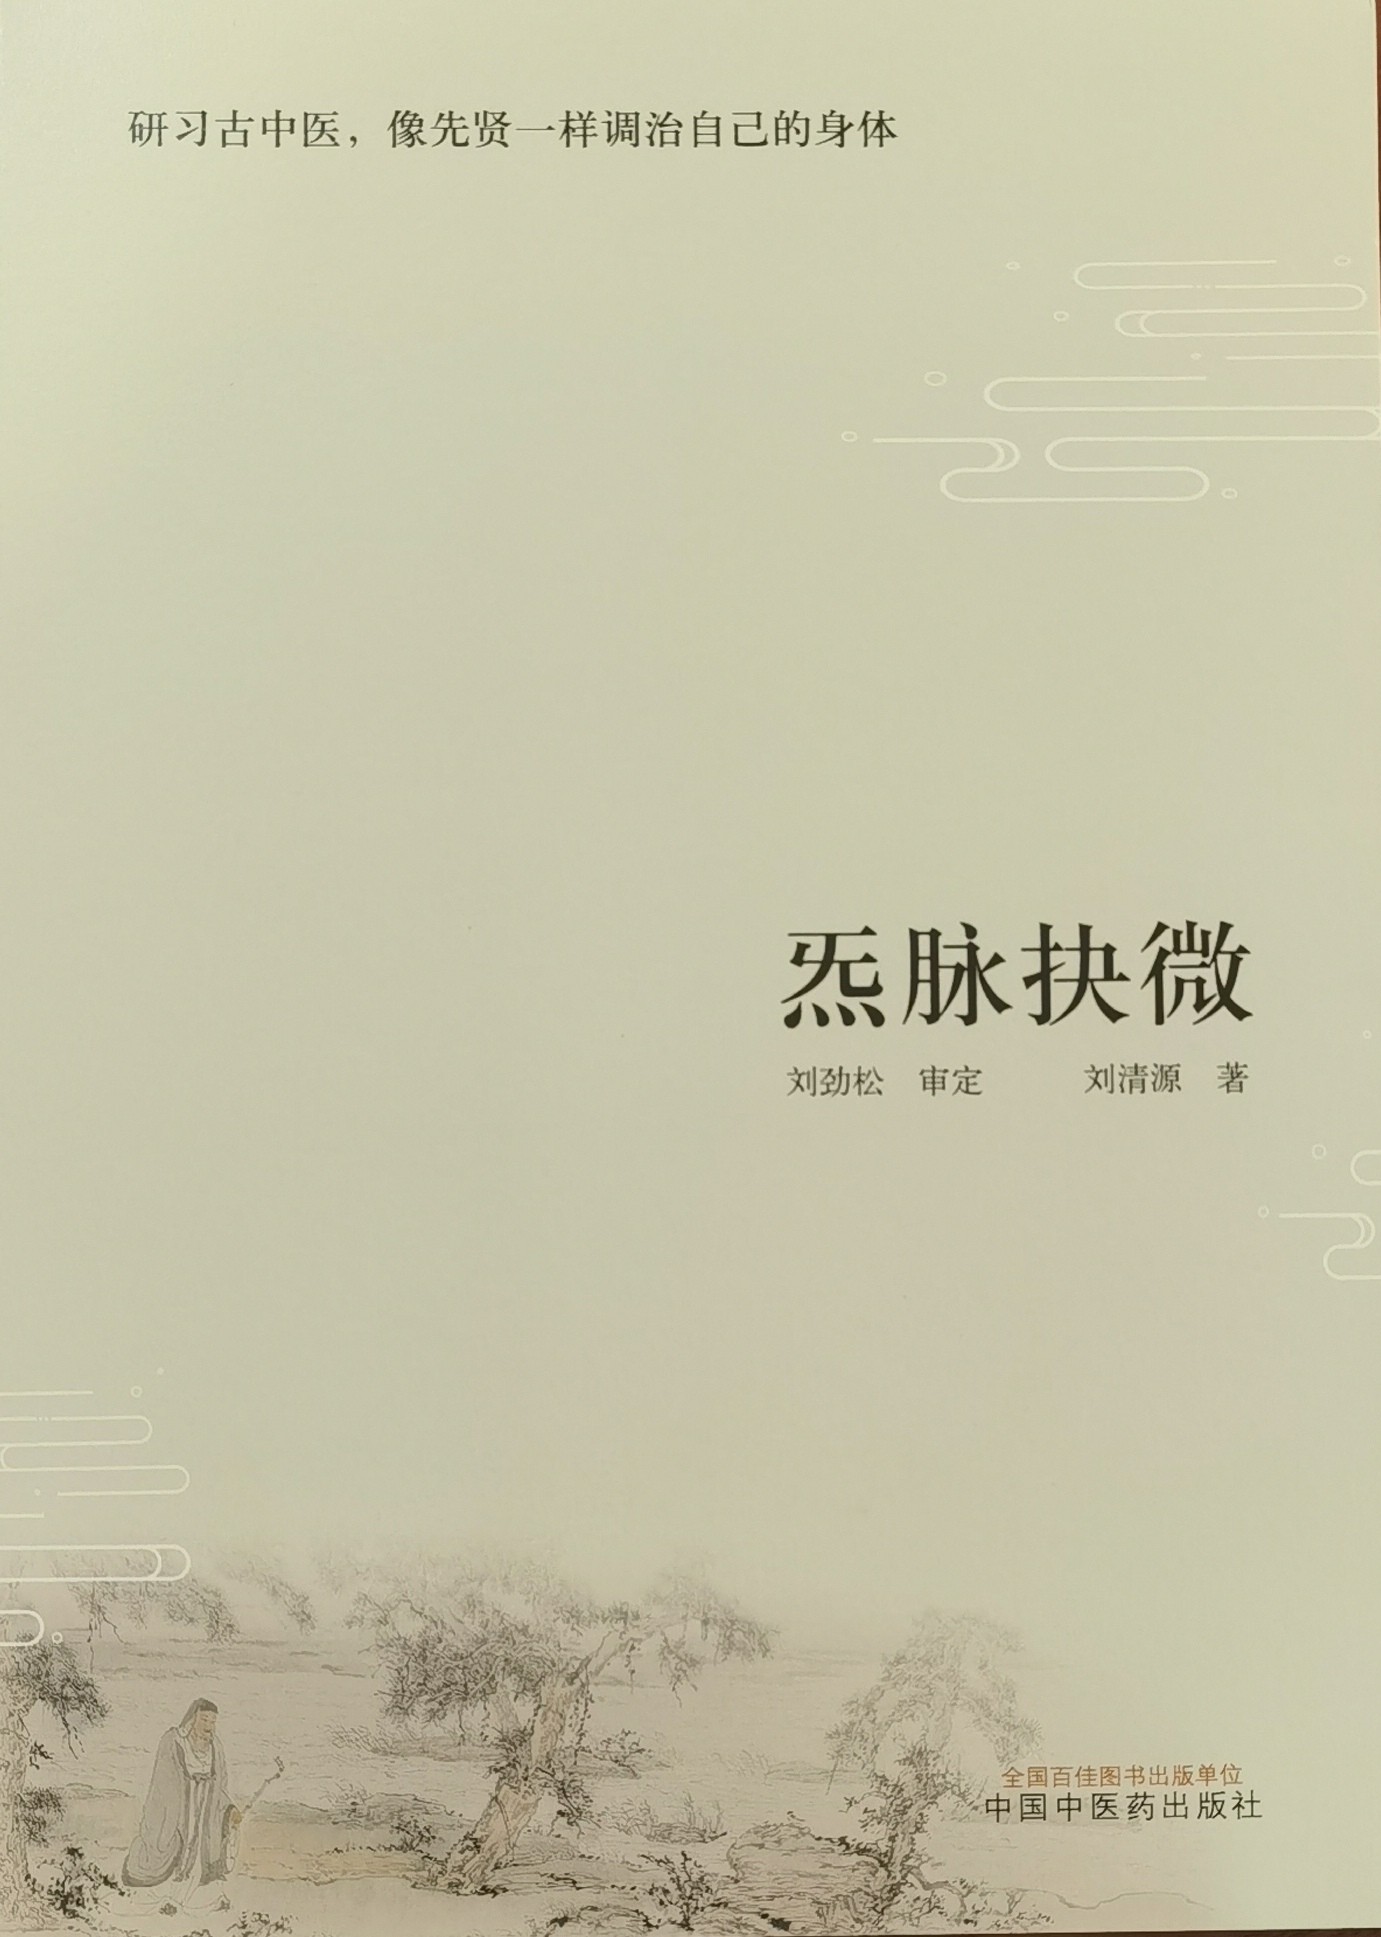 问道中华文化的“哥德巴赫猜想”《炁脉抉微》正式出版发行